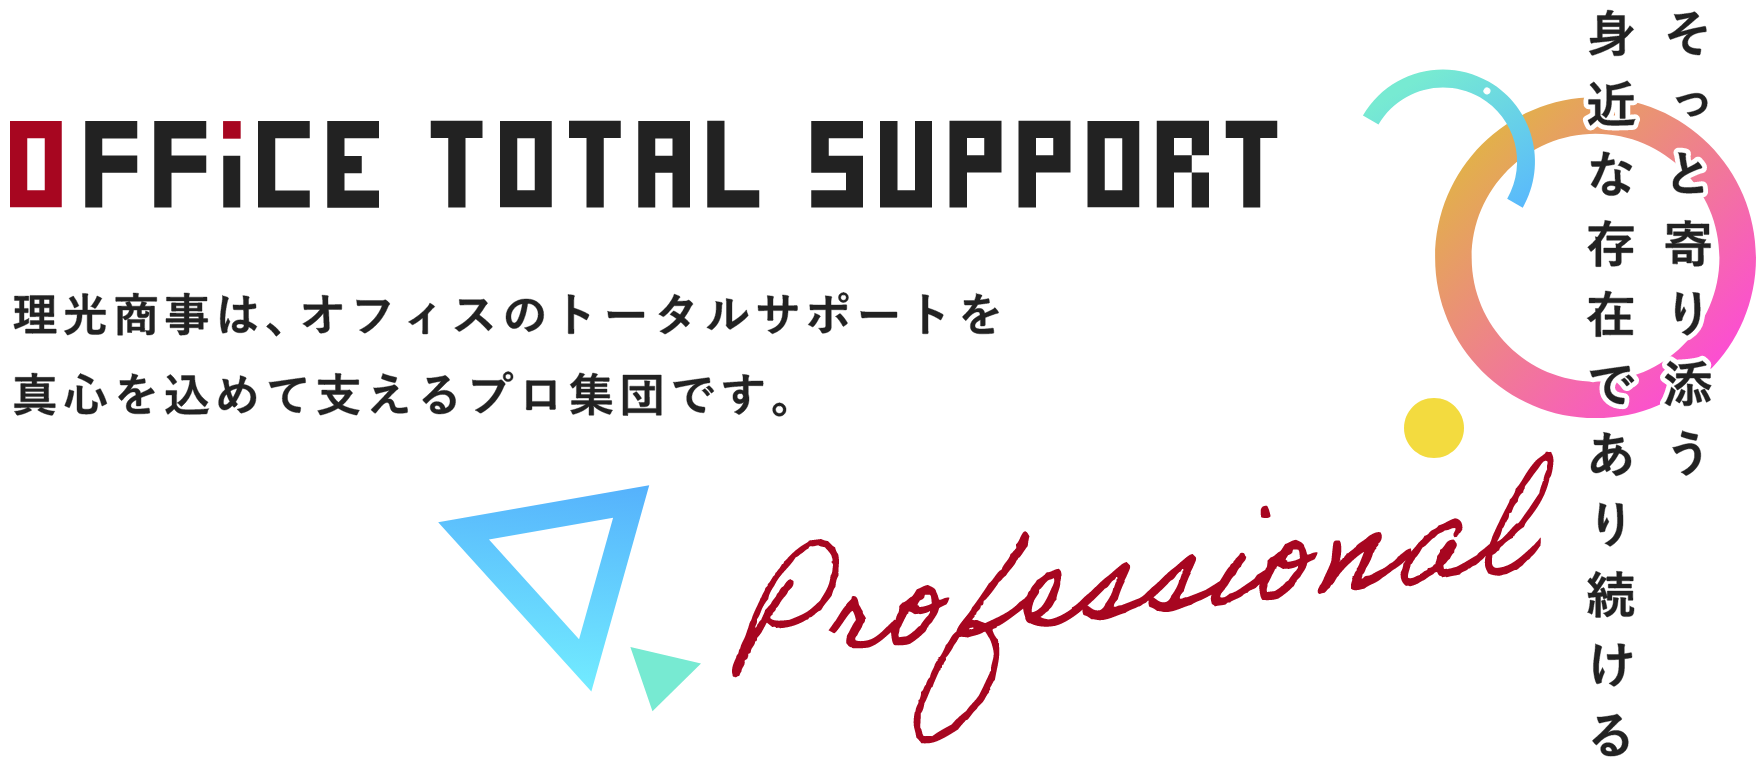 Office Total Support Professional 理光商事は、オフィスのトータルサポートを真心を込めて支えるプロ集団です。そっと寄り添う身近な存在であり続ける